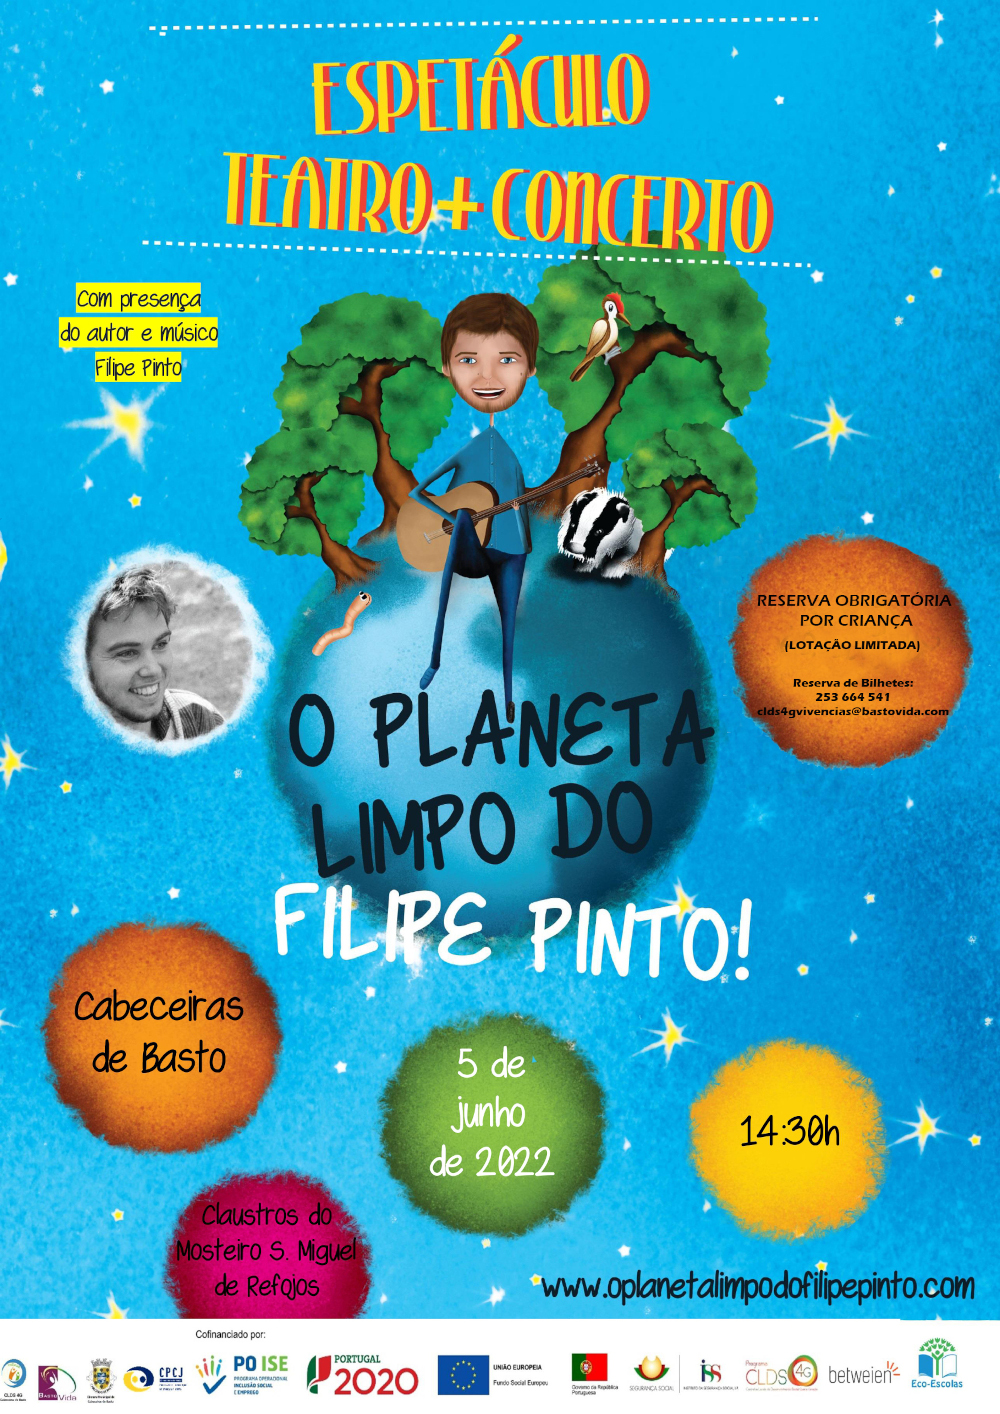 Espetculo: O Planeta Limpo do Filipe Pinto